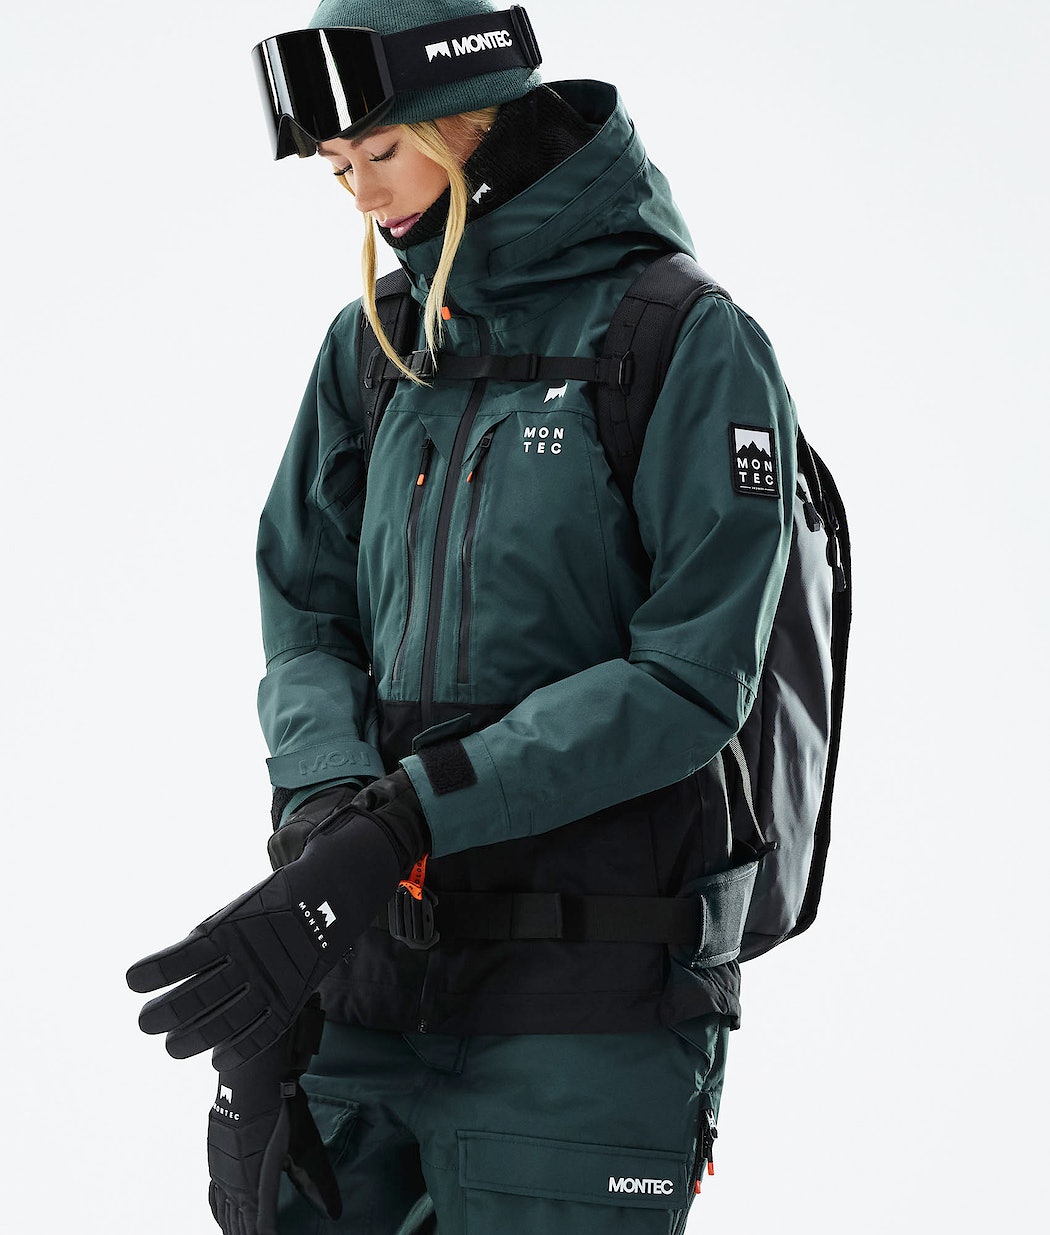 Assassin Højttaler Es Montec Snowboardjakke Online Shop Dk - Moss W Dame Sort